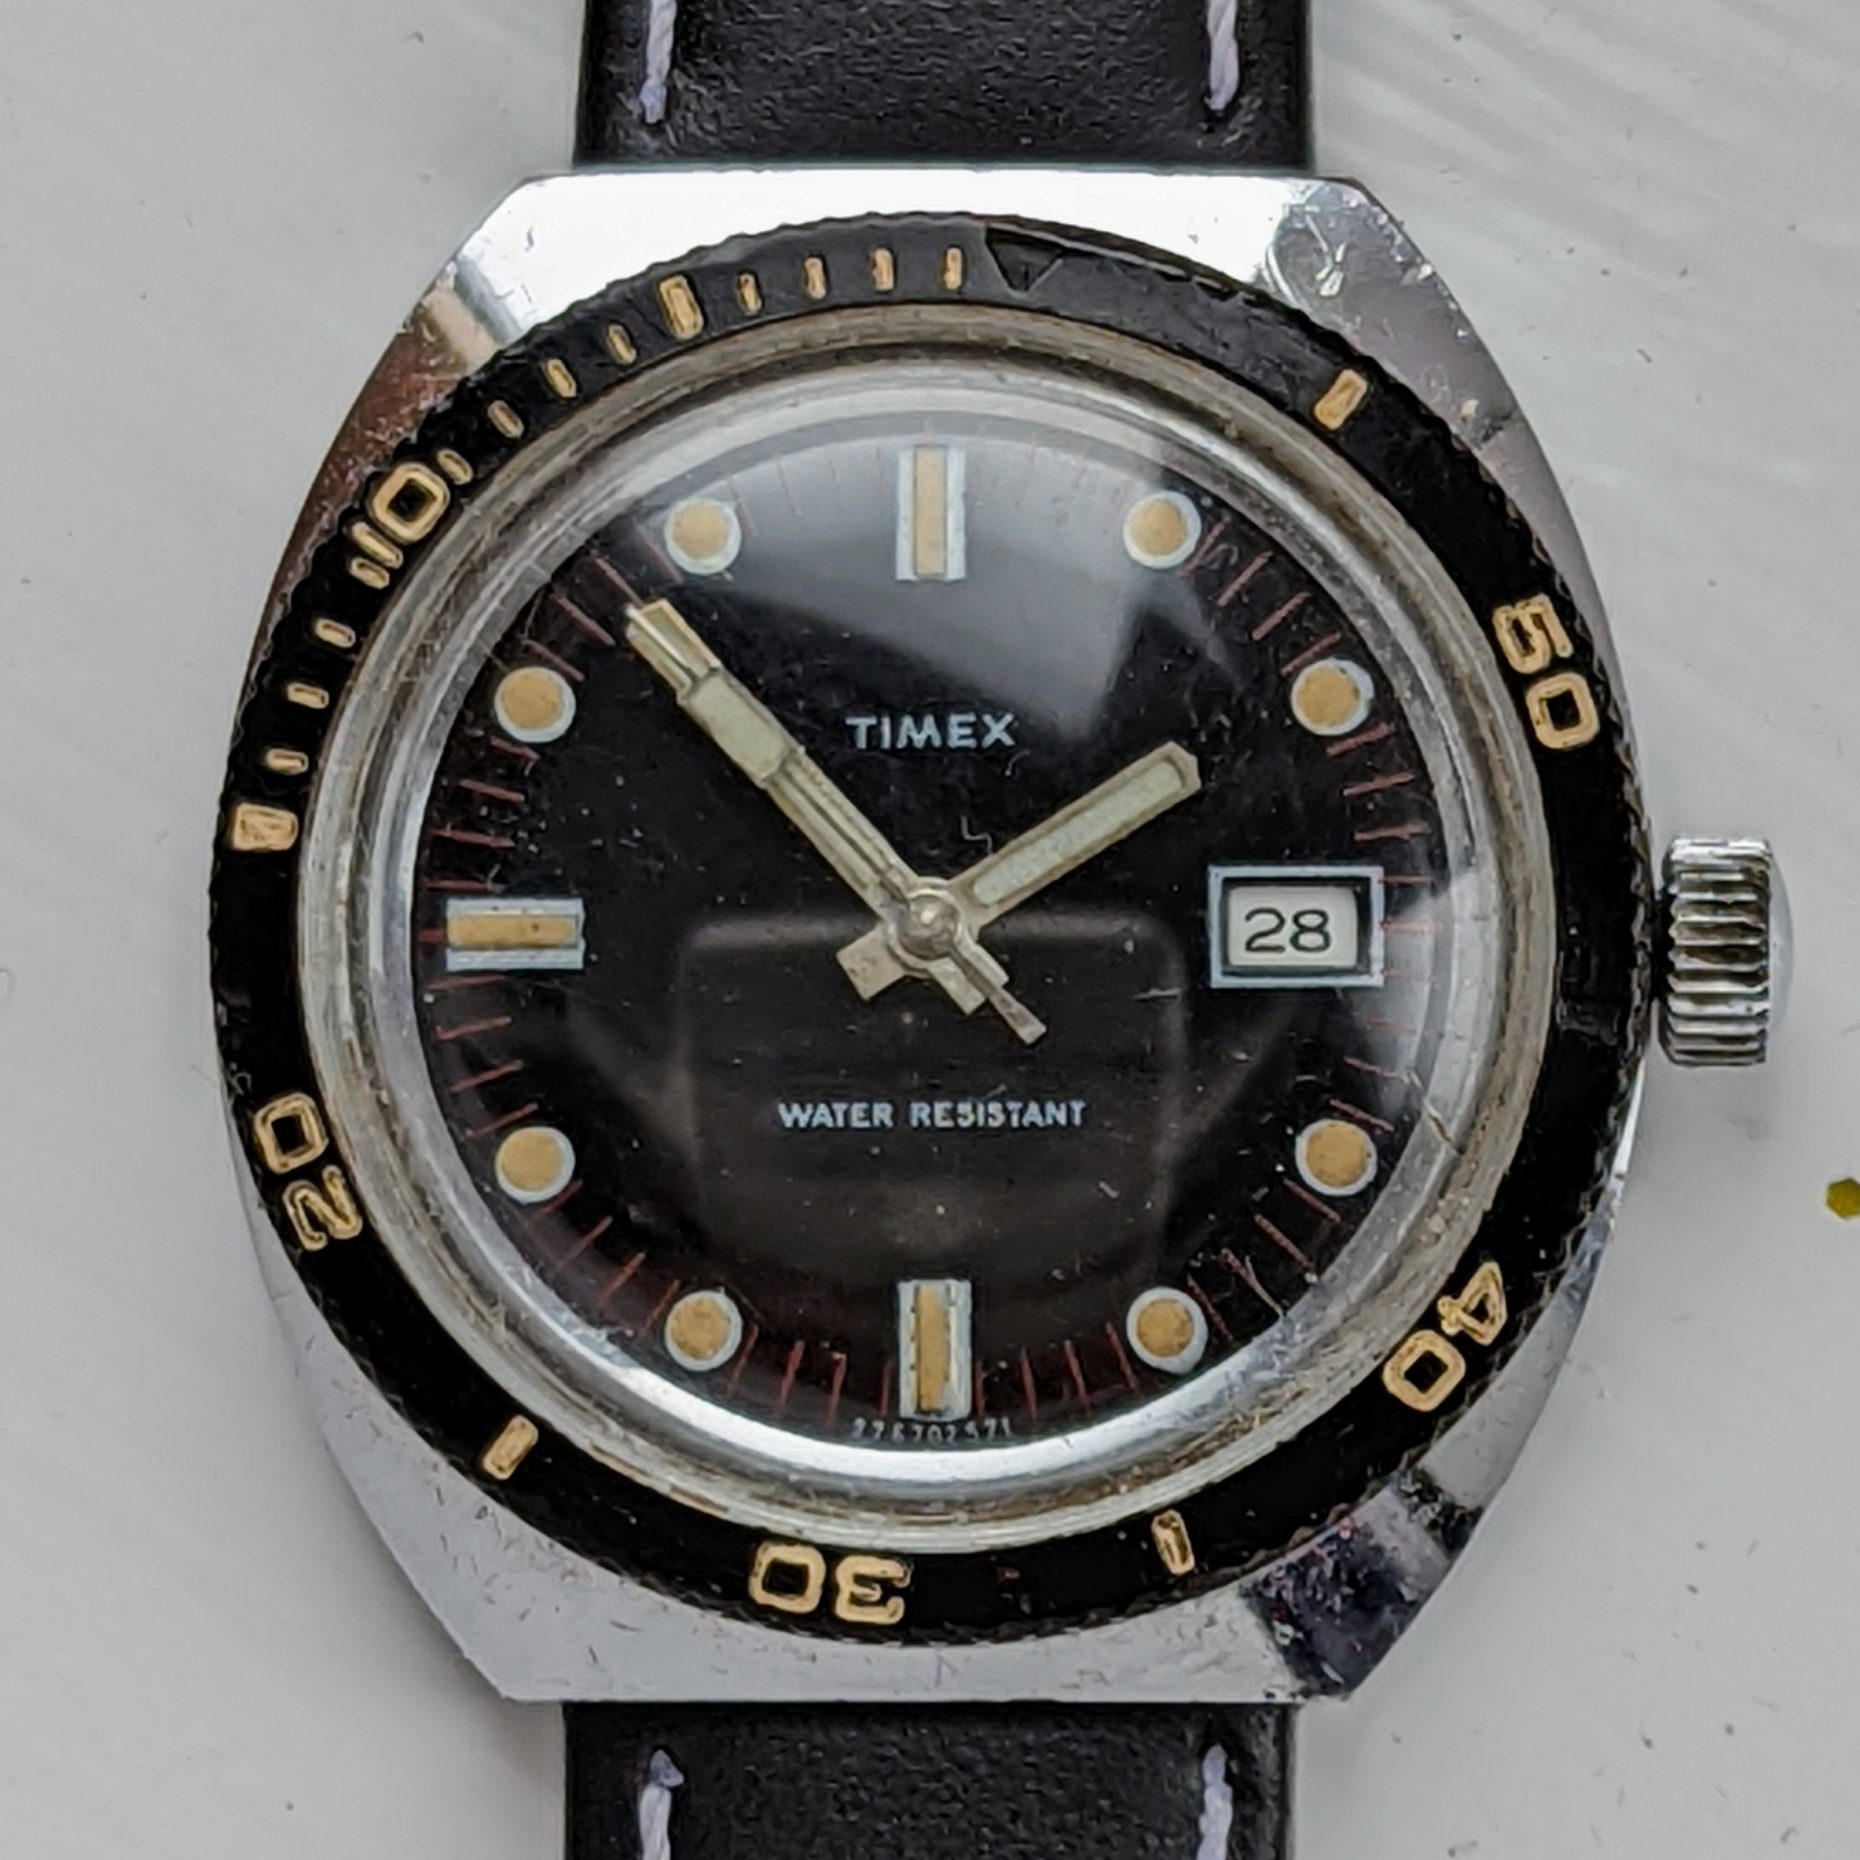 Timex Marlin 27670 2571 [1971] Dive Watch